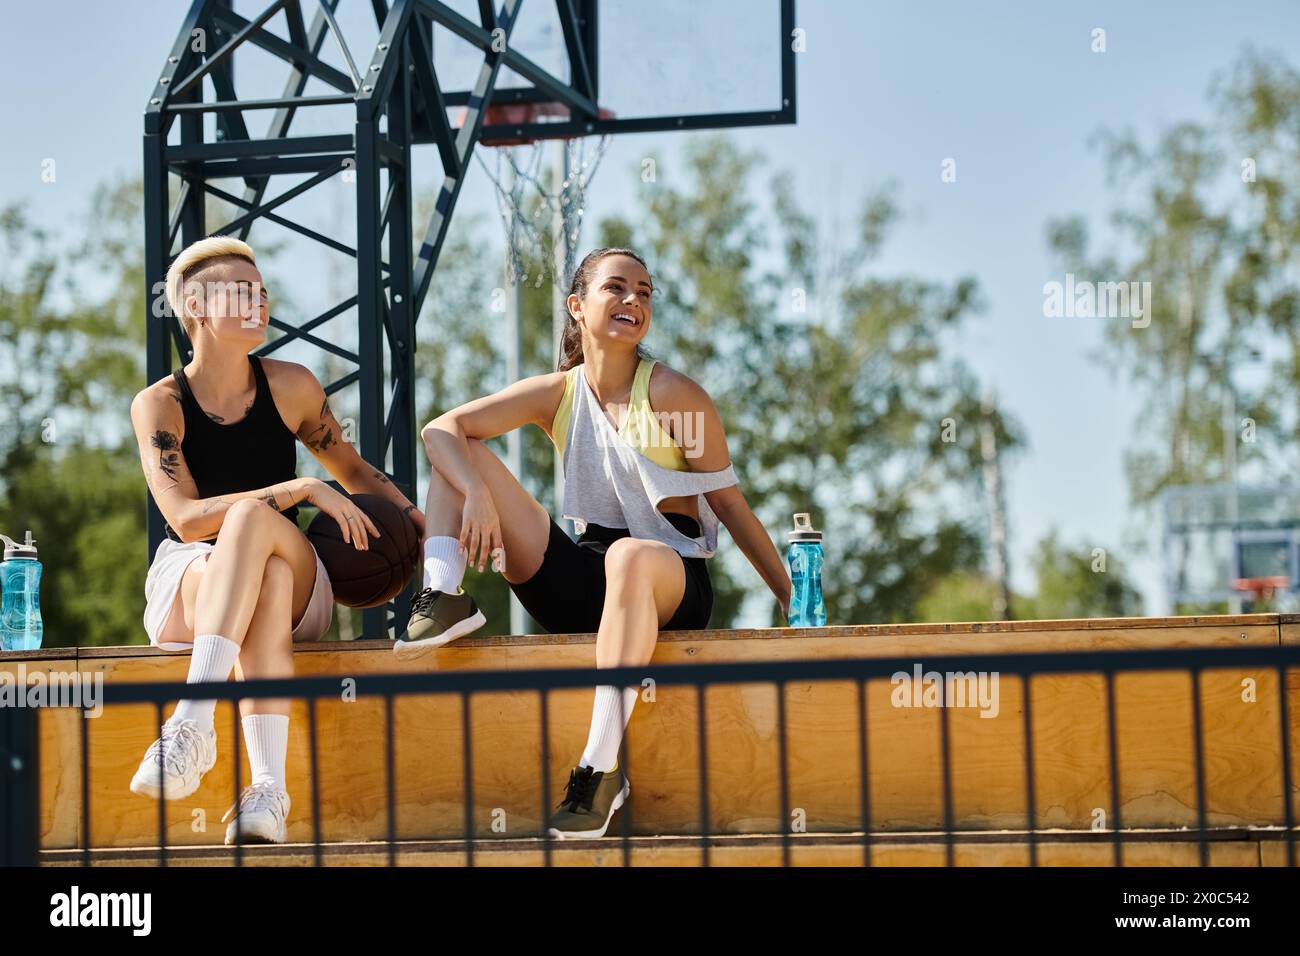 Deux jeunes femmes, amies athlétiques, assises sur un banc devant un panier de basket-ball par une journée ensoleillée. Banque D'Images